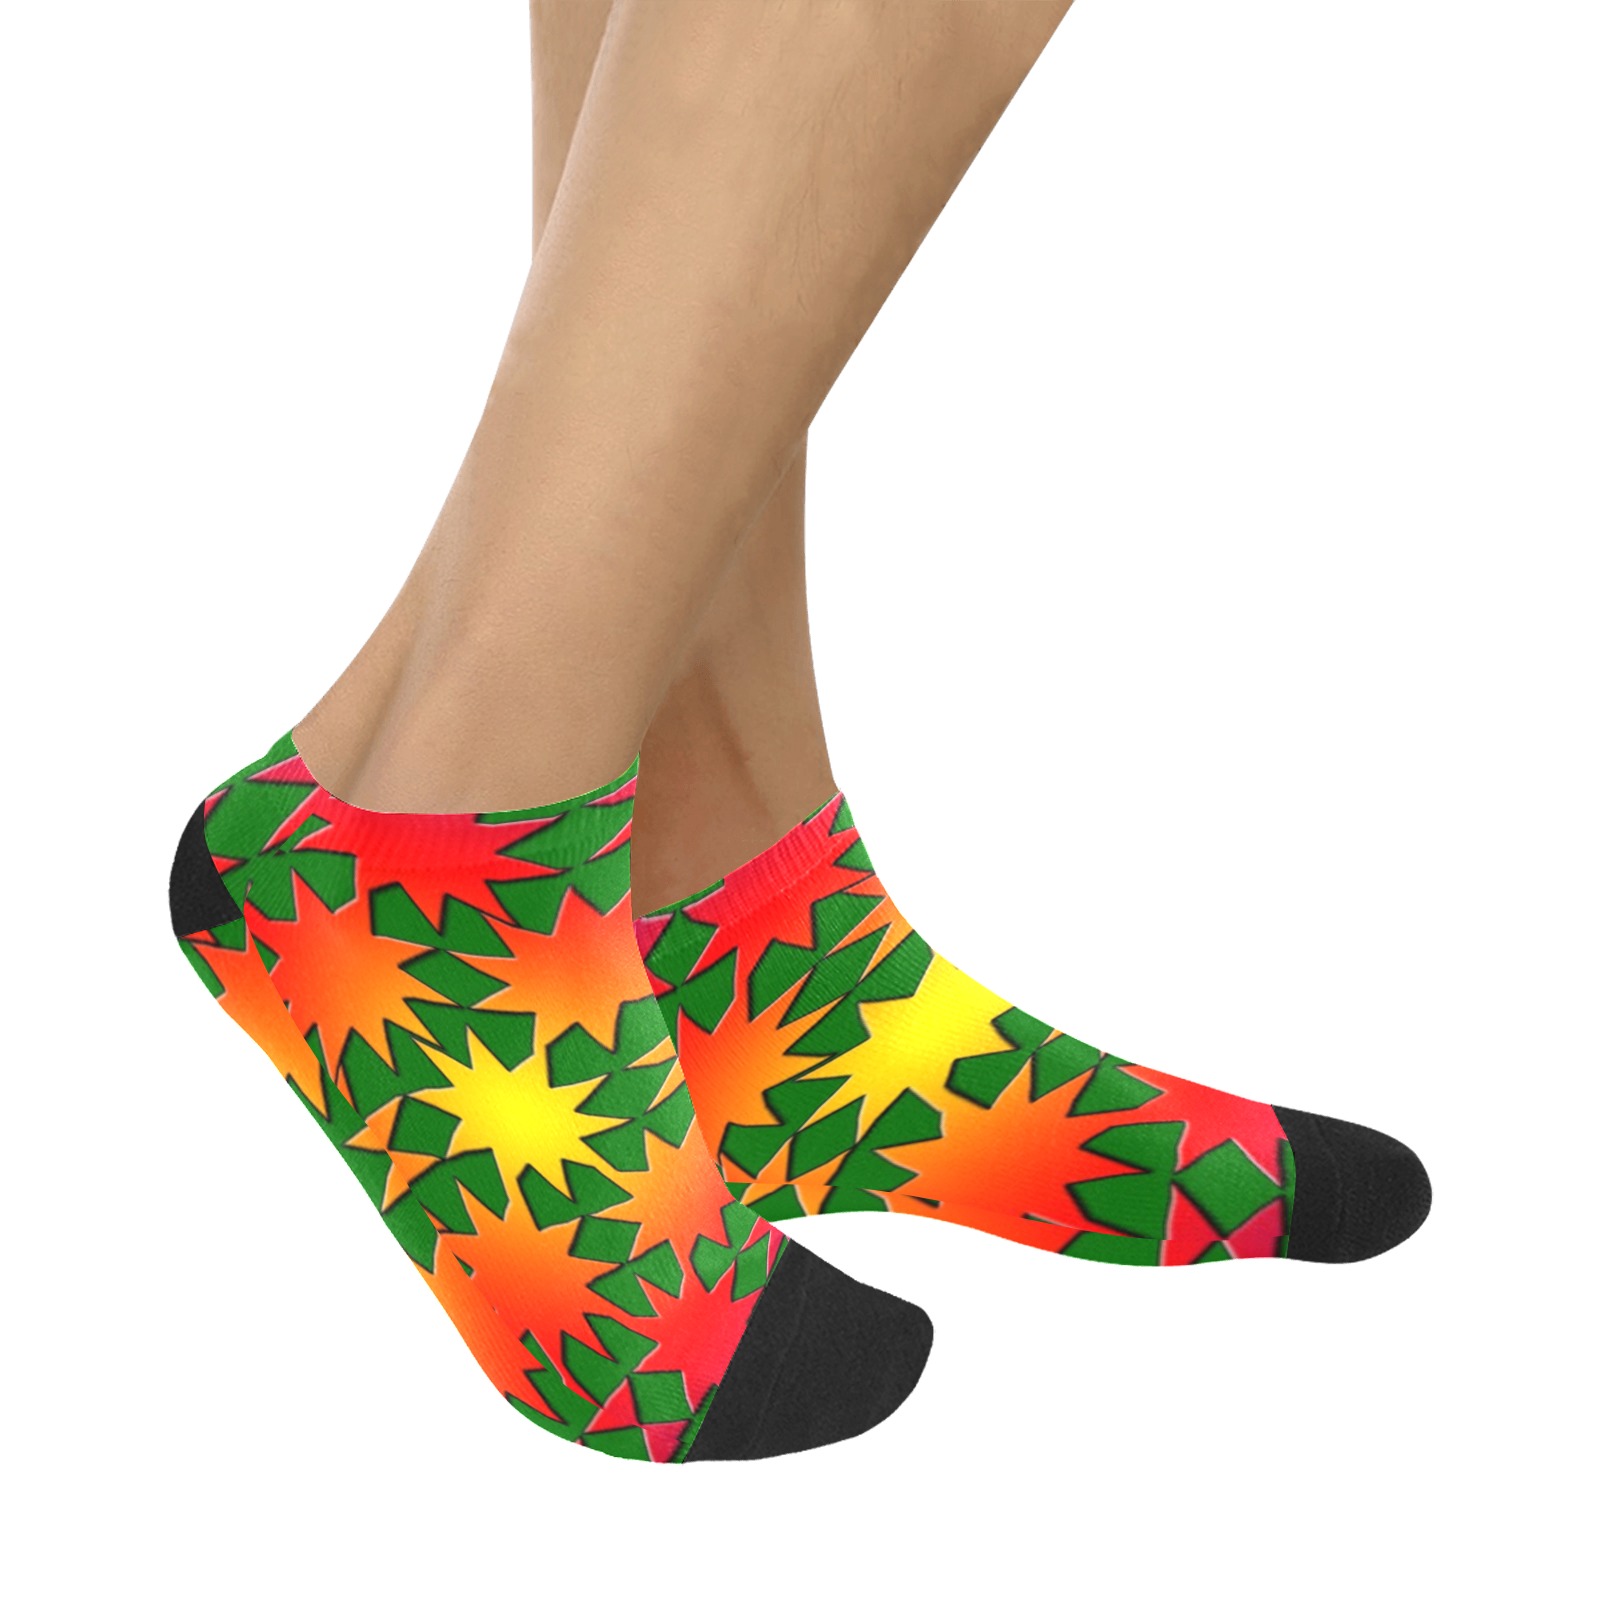 star gazegrn Women's Ankle Socks